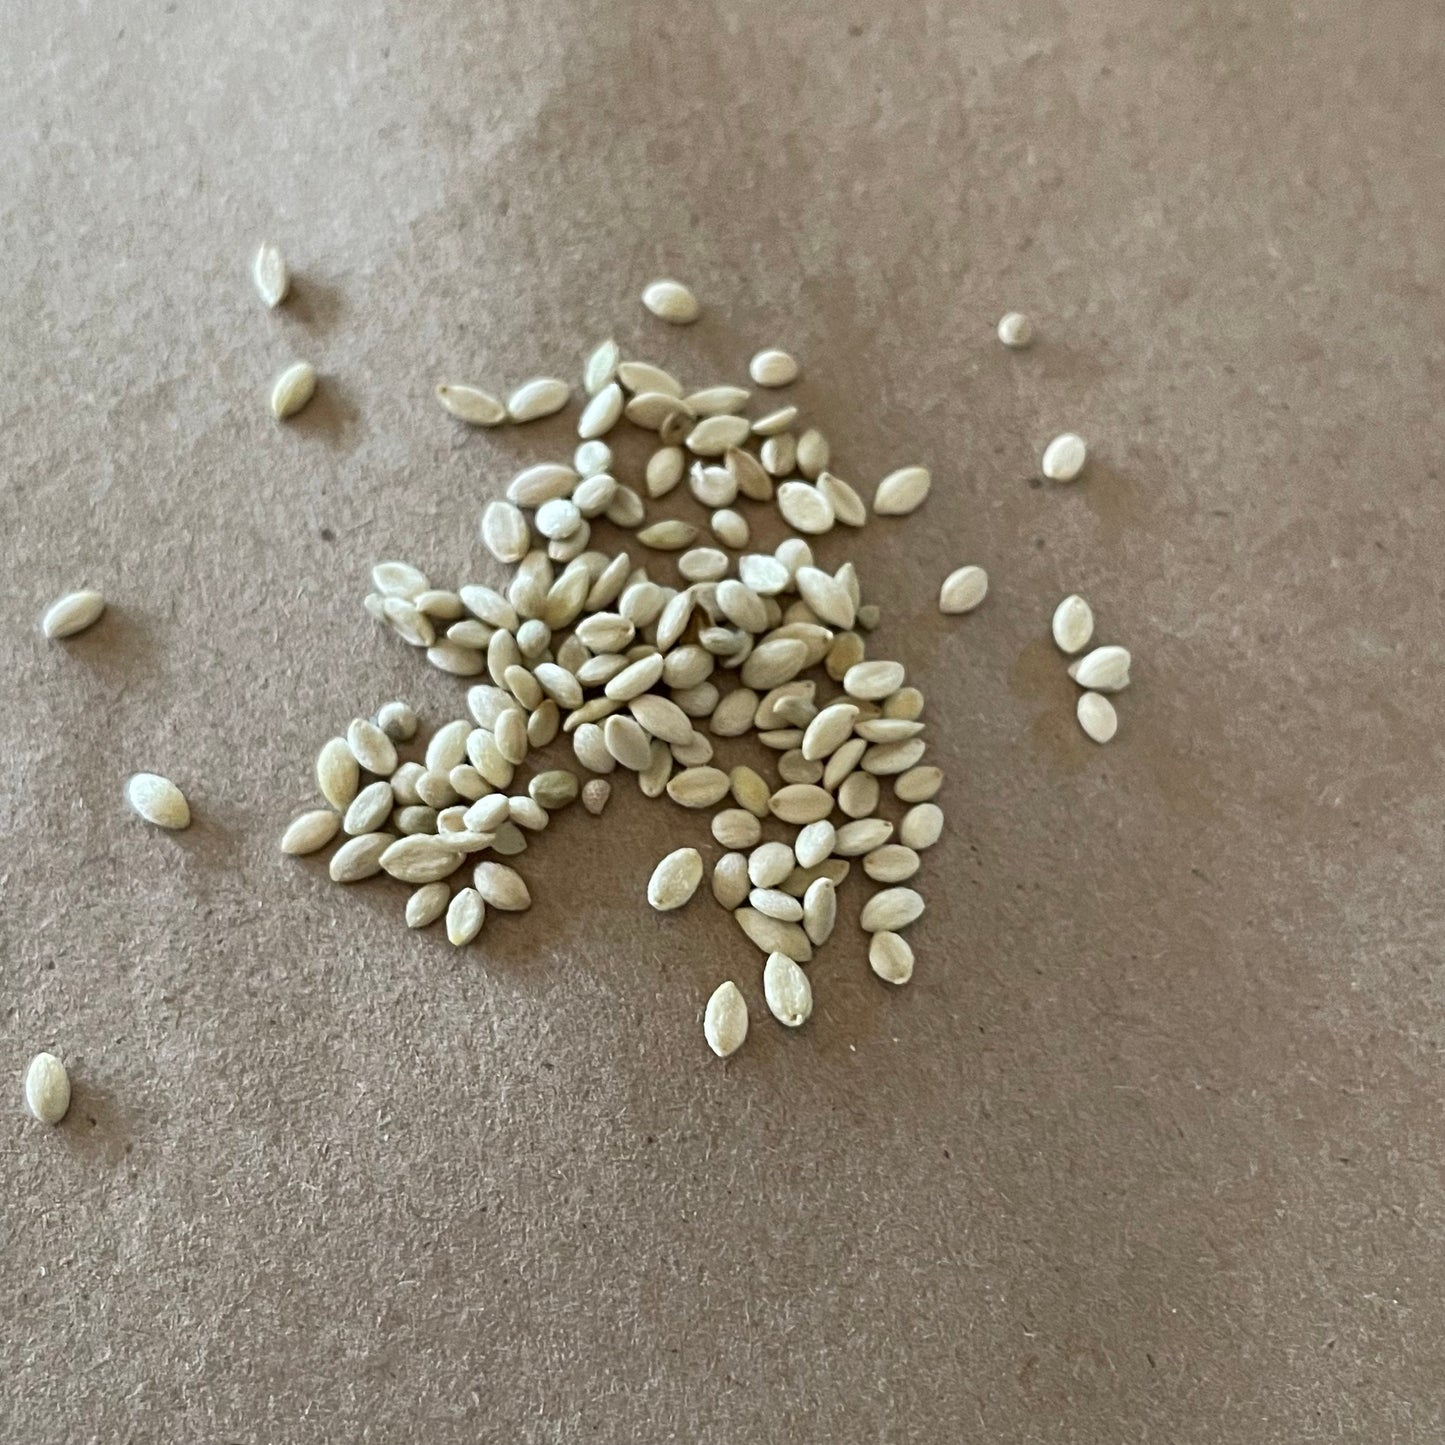 Semillas de Snowberry (Symphoricarpos albus) - Arbusto perenne nativo silvestre - Más de 40 semillas